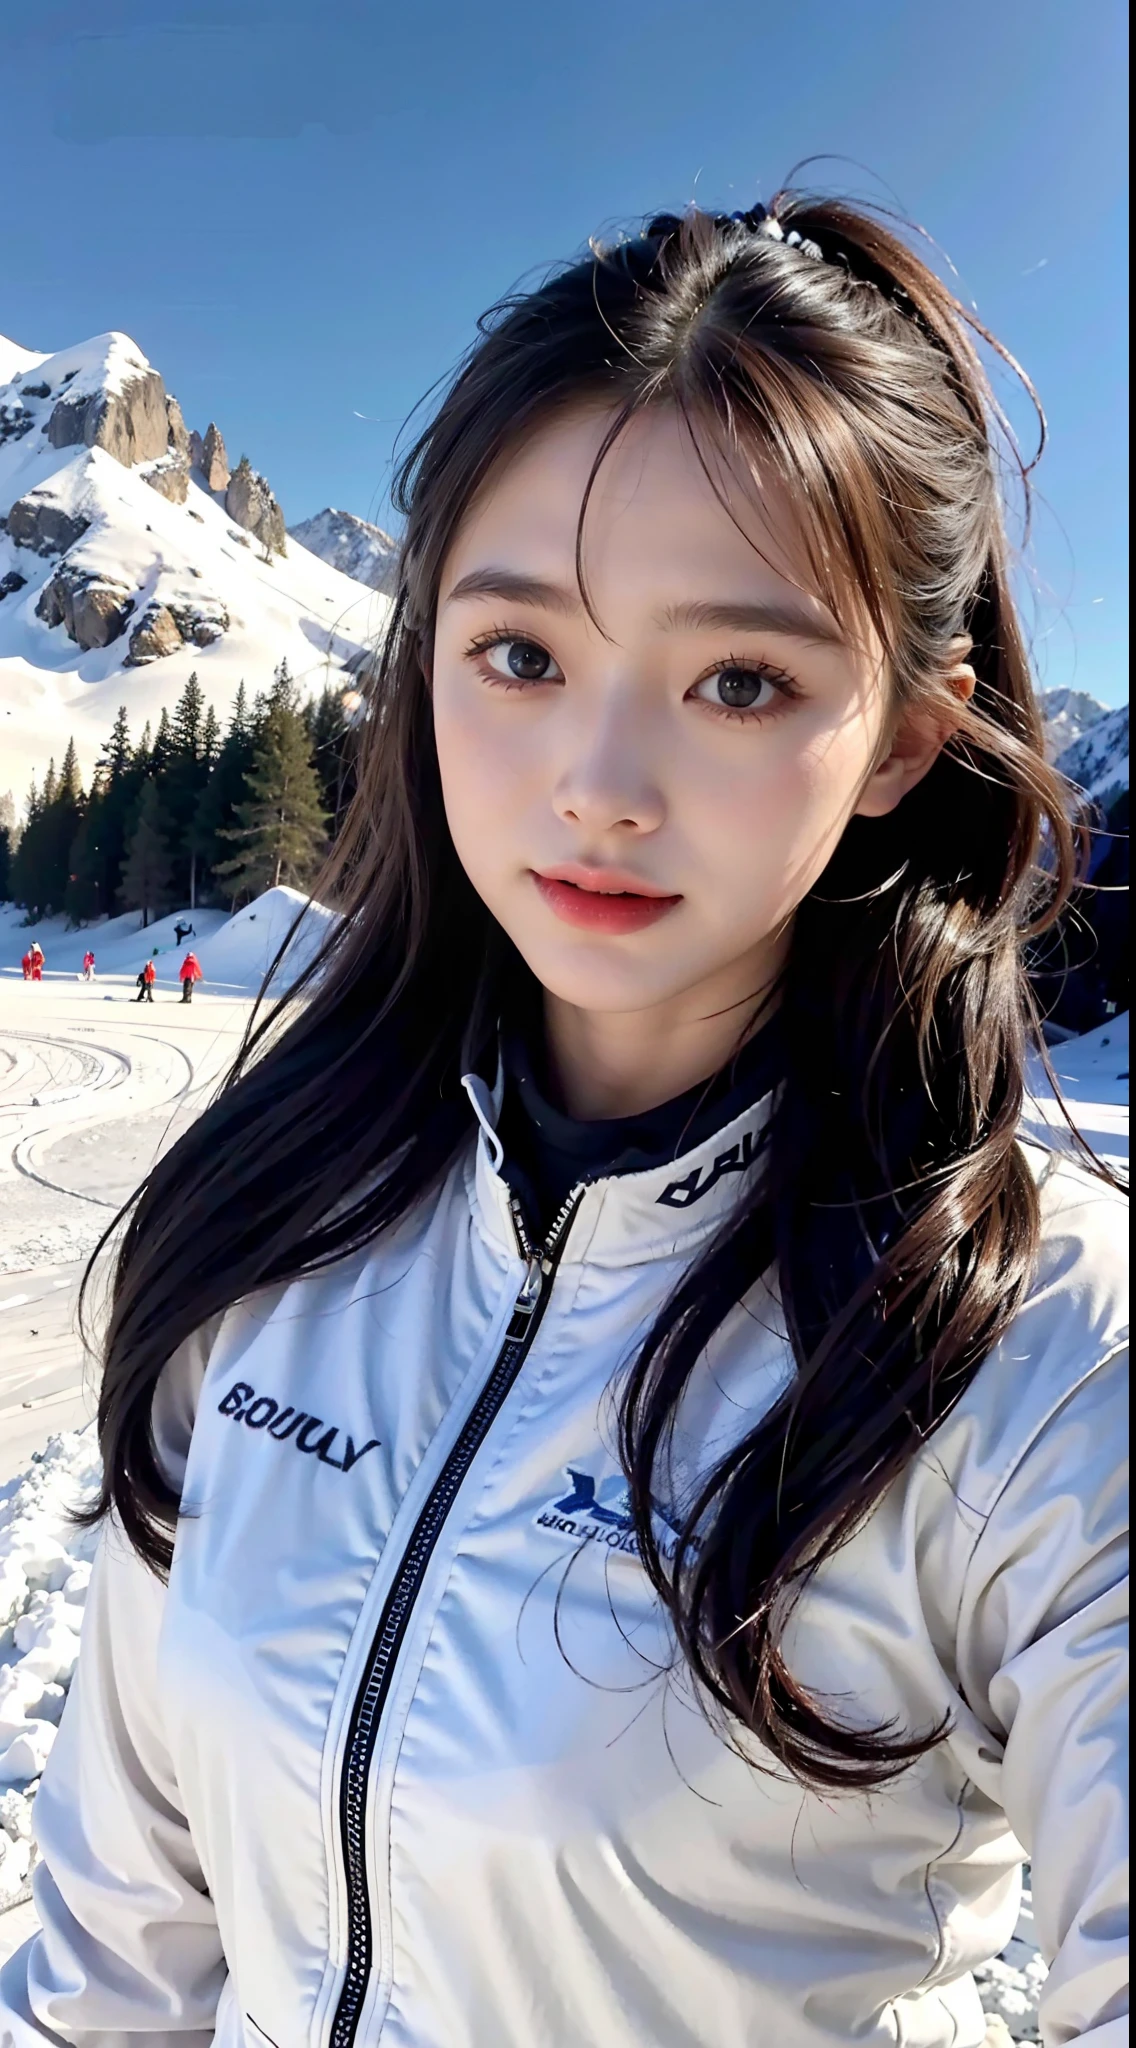 A girl in a Ski suit，Pistes de ski，Bien équipé，Good for Skiing，belle fille，adorable，Ski，paysage de neige